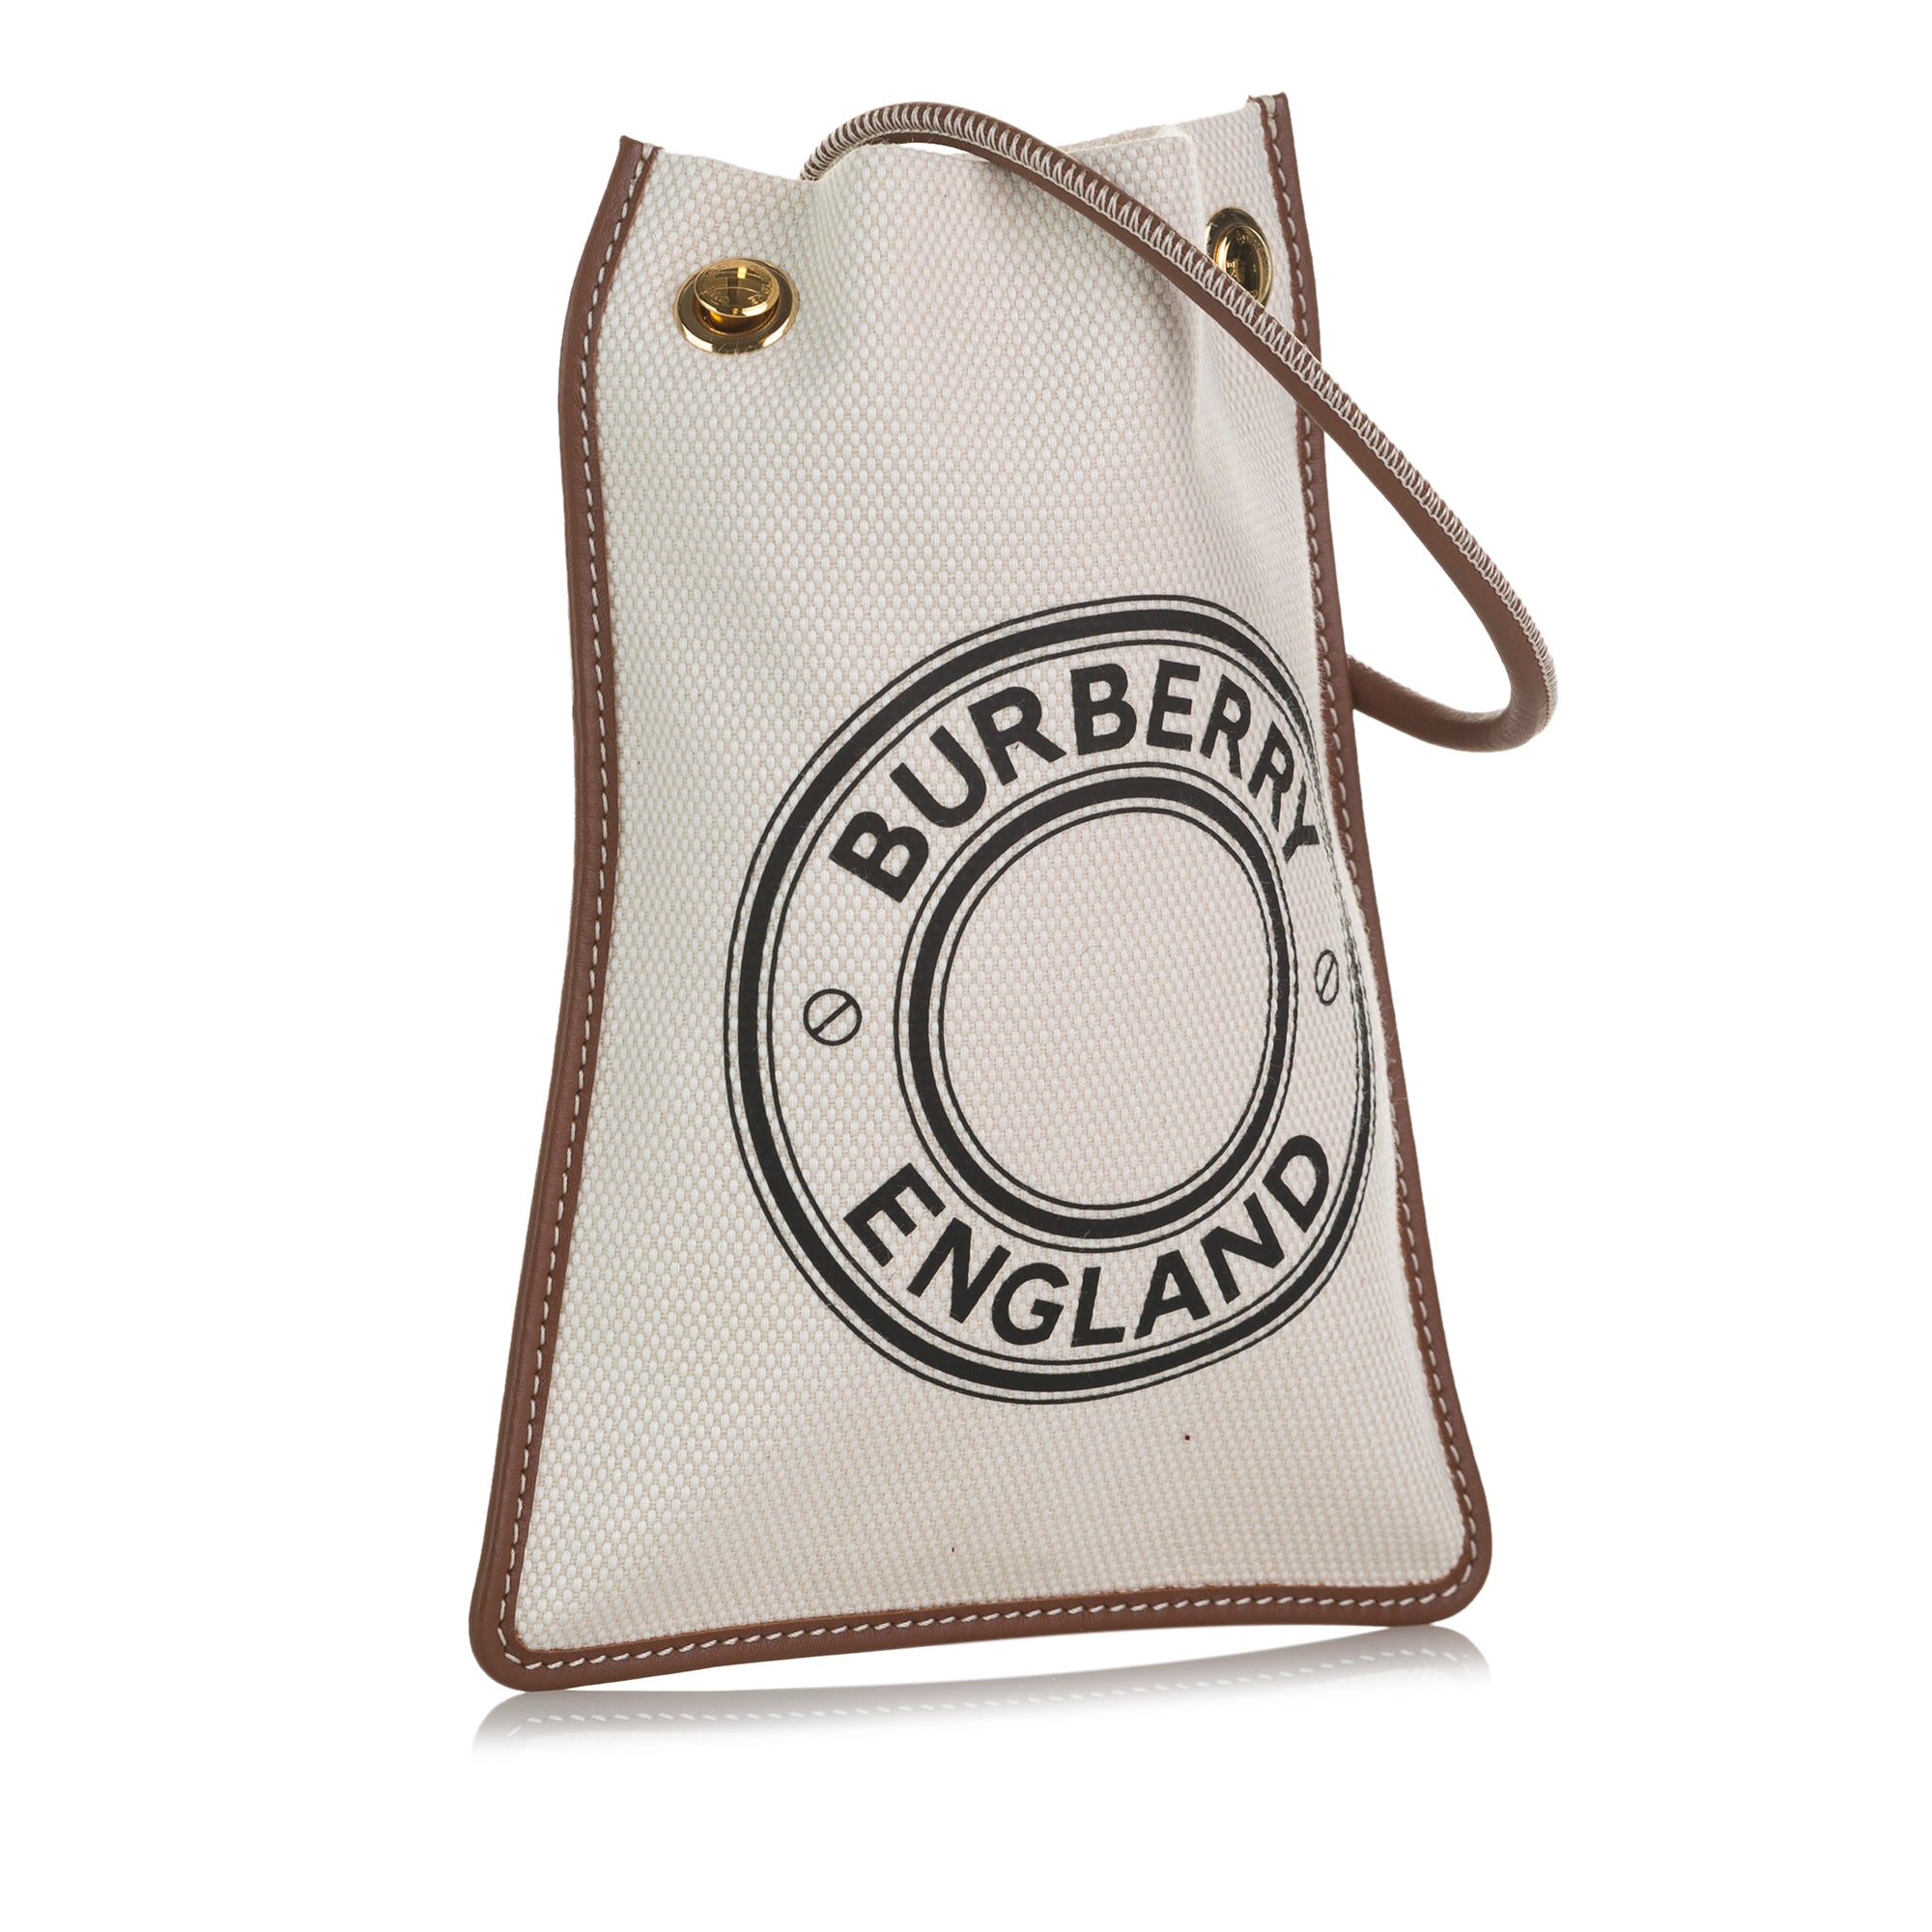 Burberry small Peggy monogram tote bag